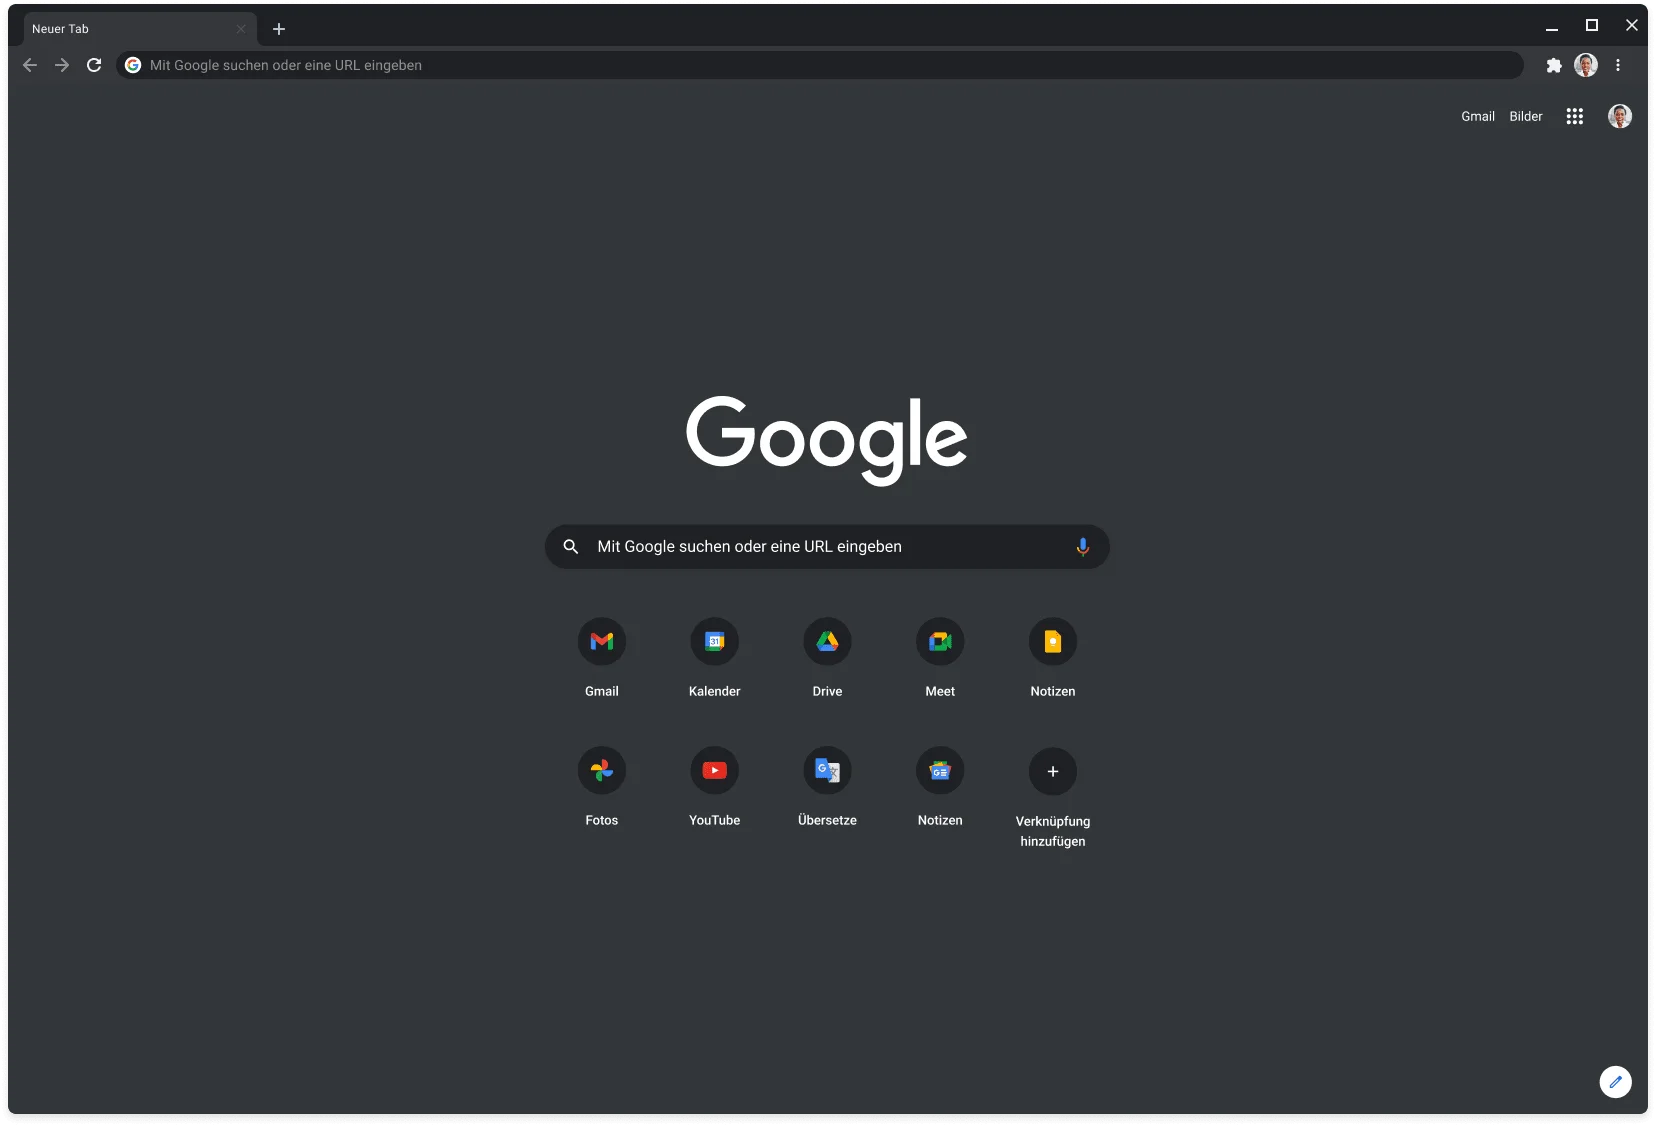 Chrome-Browserfenster im dunklen Modus mit Google.com.